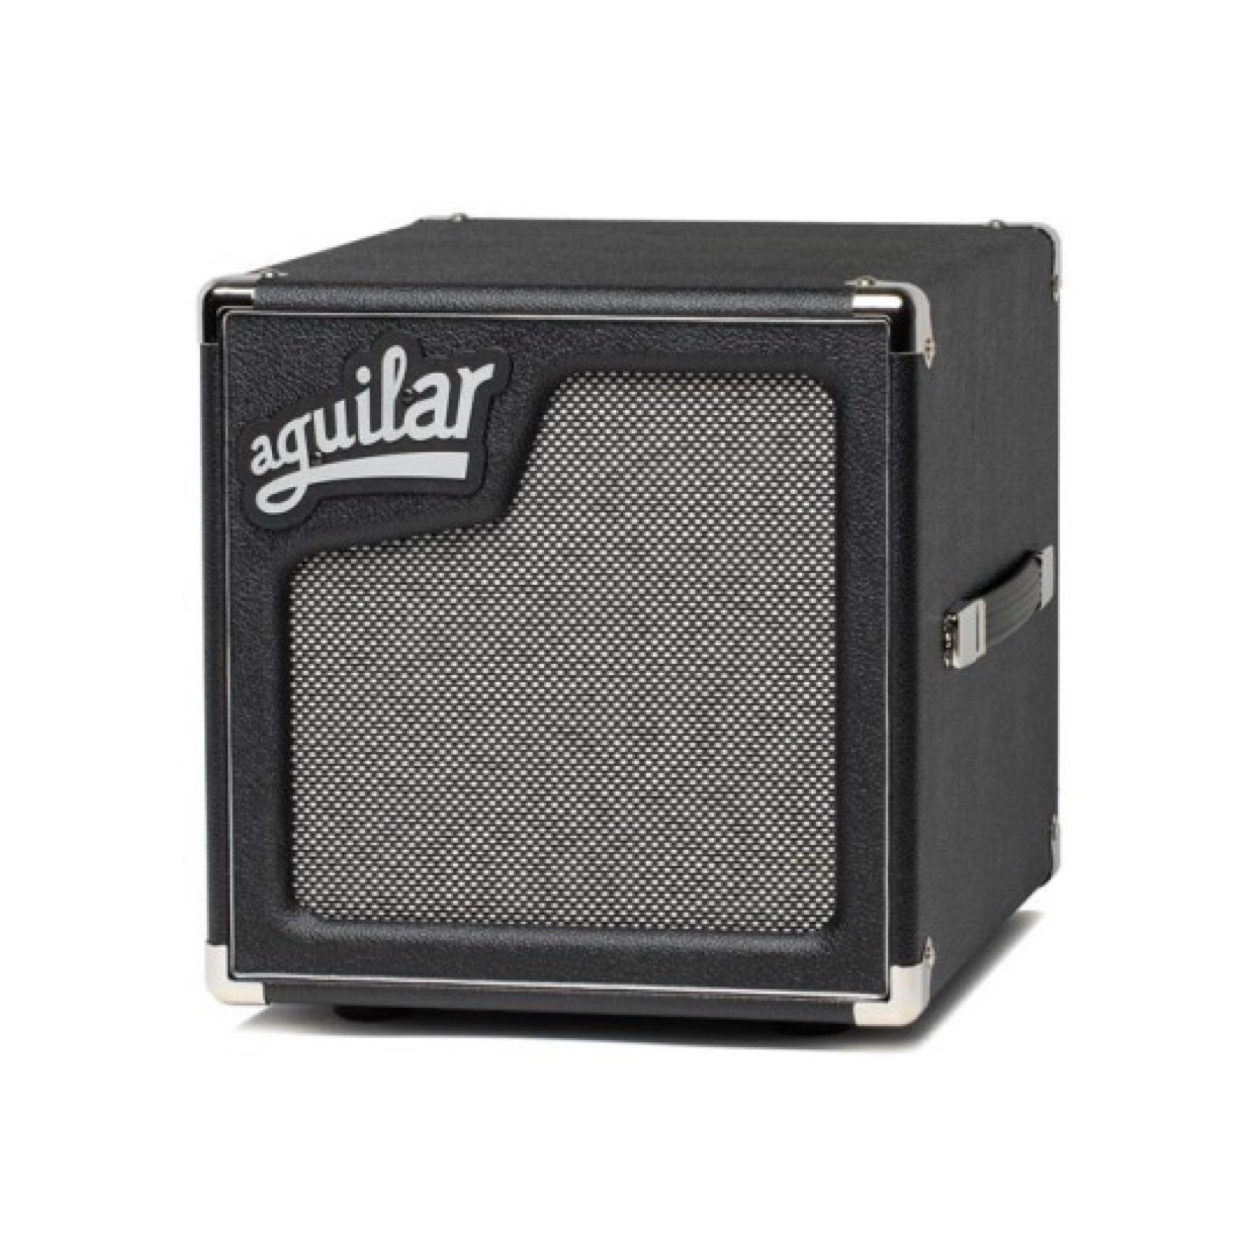 Aguilar SL 110 / SL110 Bass Cabinet 1 x 10" Speaker 175 Watt 8 Ohm